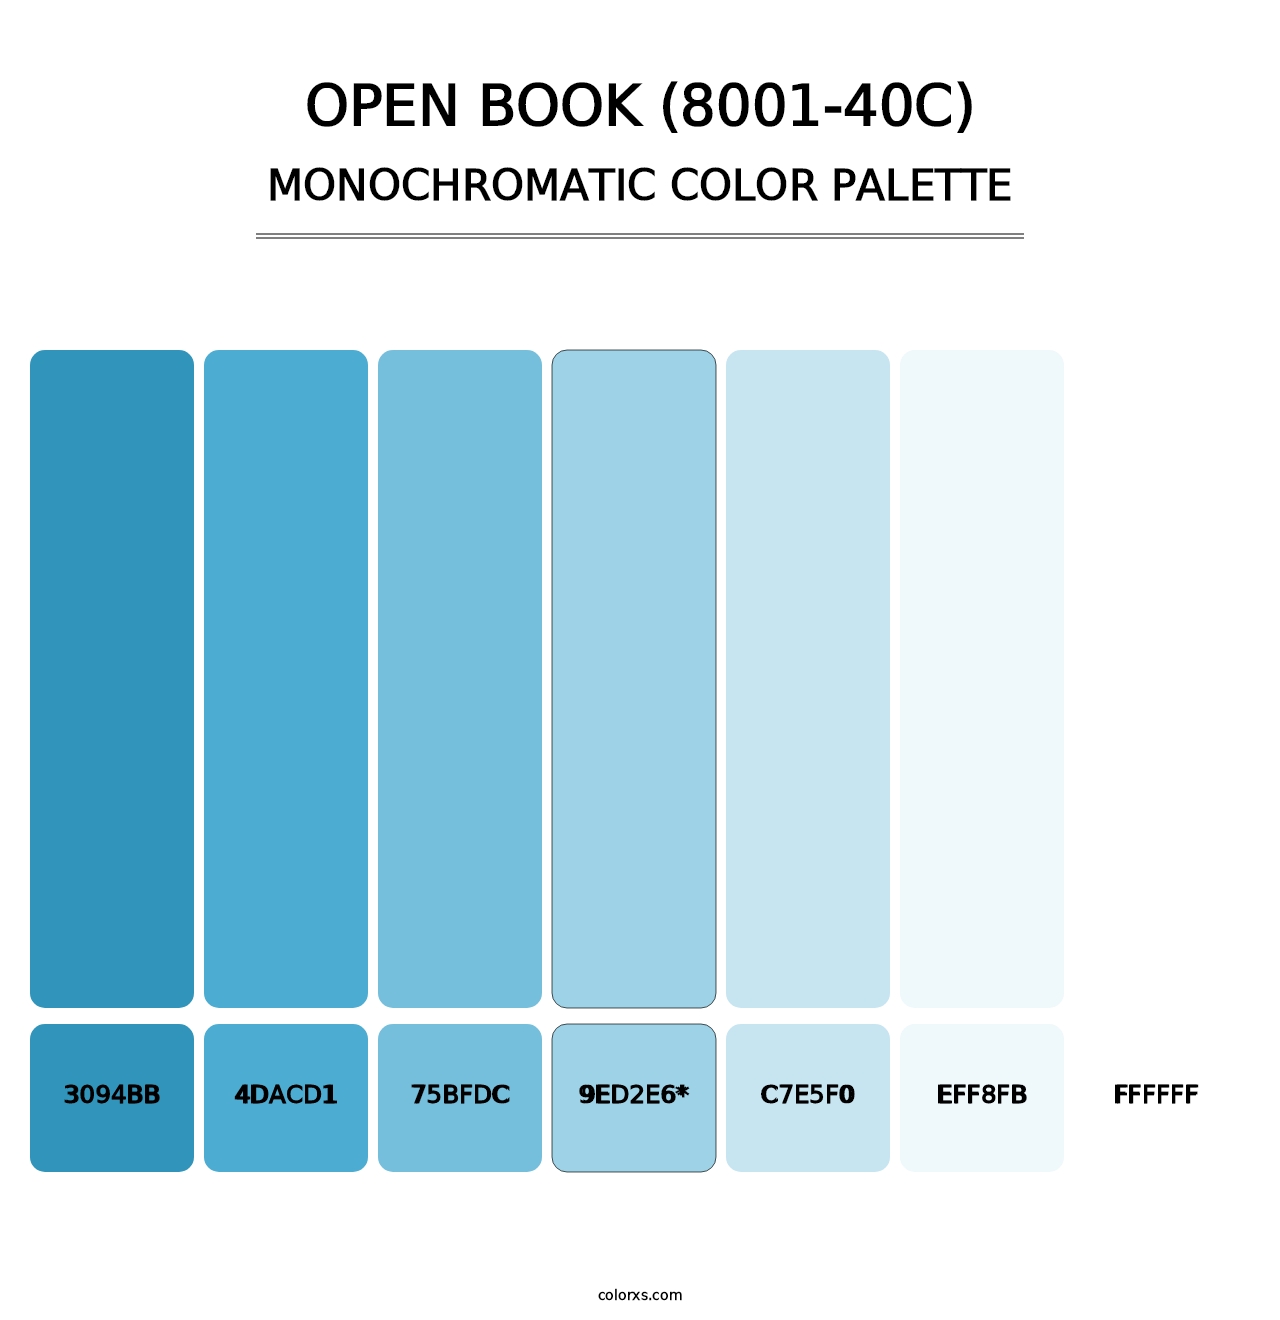 Open Book (8001-40C) - Monochromatic Color Palette